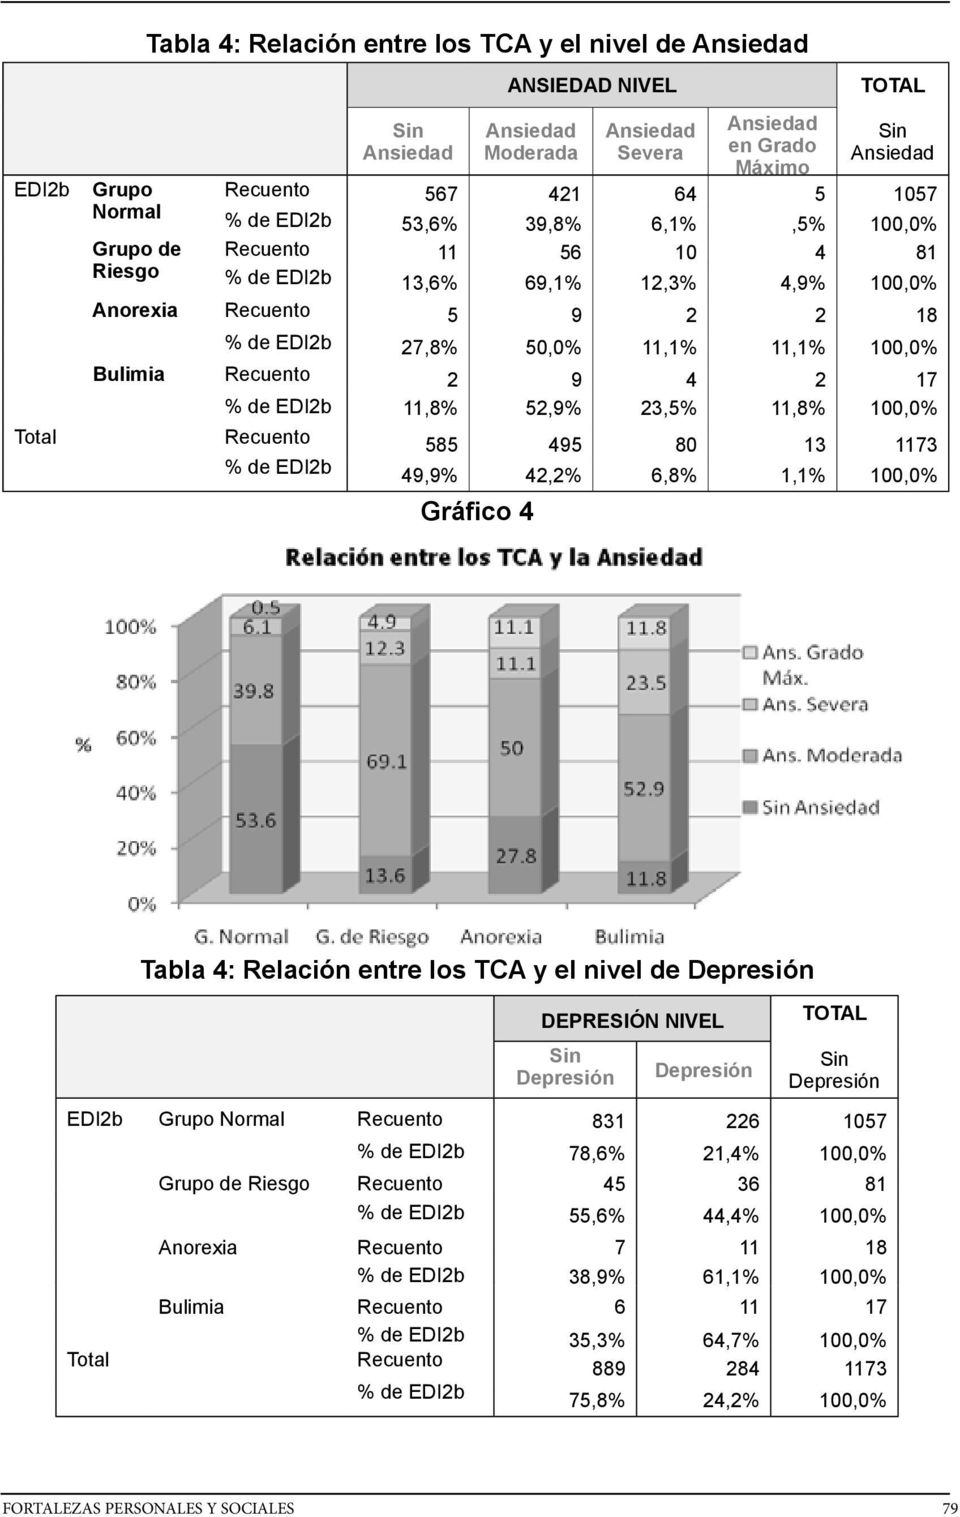 Bulimia Recuento 2 9 4 2 17 % de EDI2b 11,8% 52,9% 23,5% 11,8% 100,0% Total Recuento 585 495 80 13 1173 % de EDI2b 49,9% 42,2% 6,8% 1,1% 100,0% Gráfico 4 Tabla 4: Relación entre los TCA y el nivel de